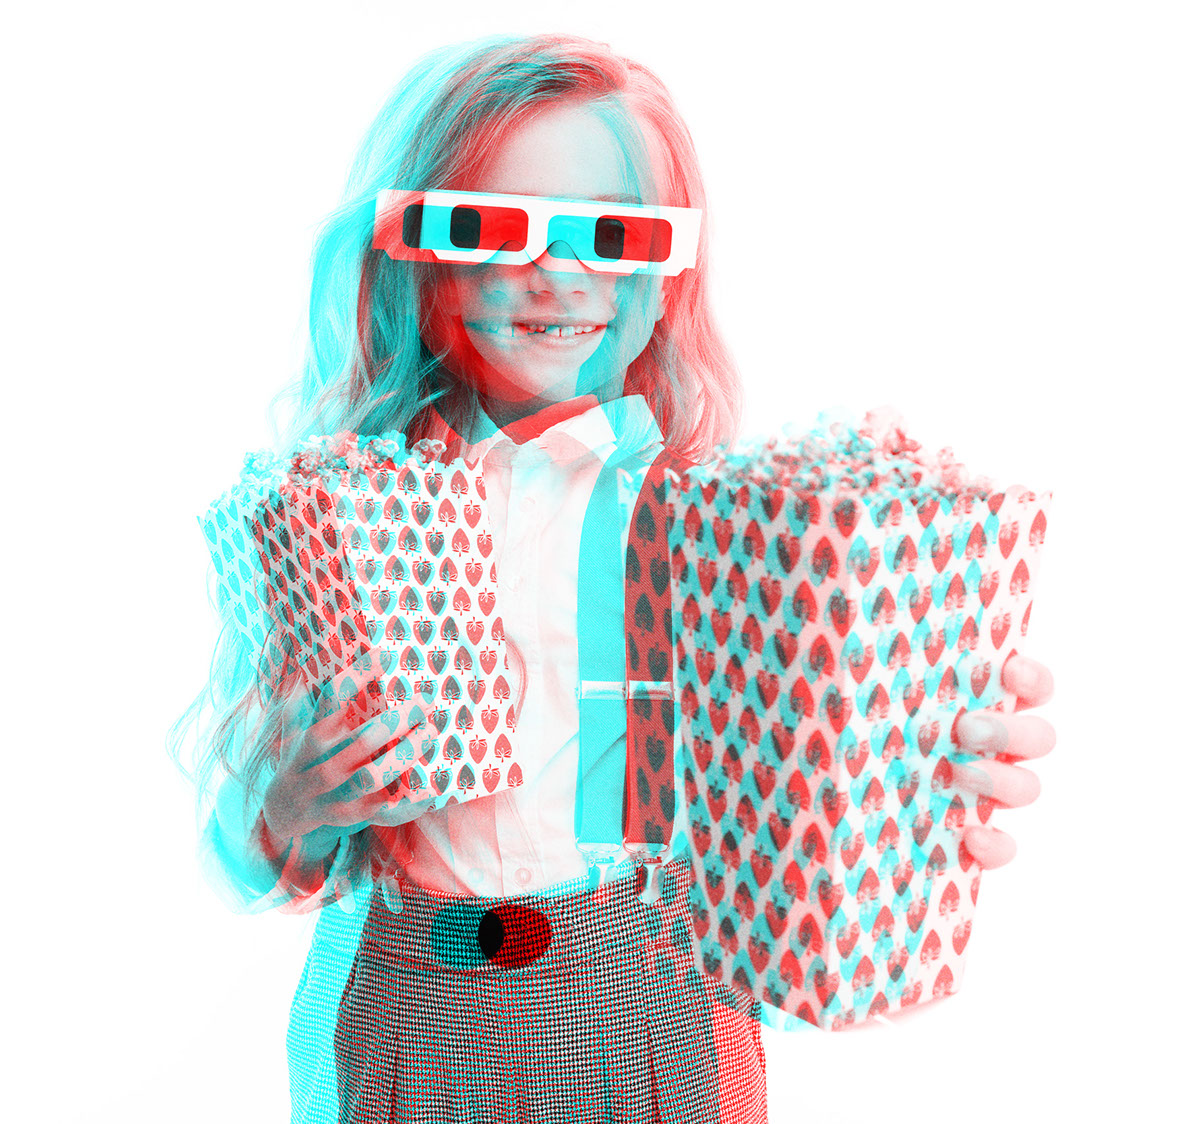 3D Glasses Photoshop Effect rendition image